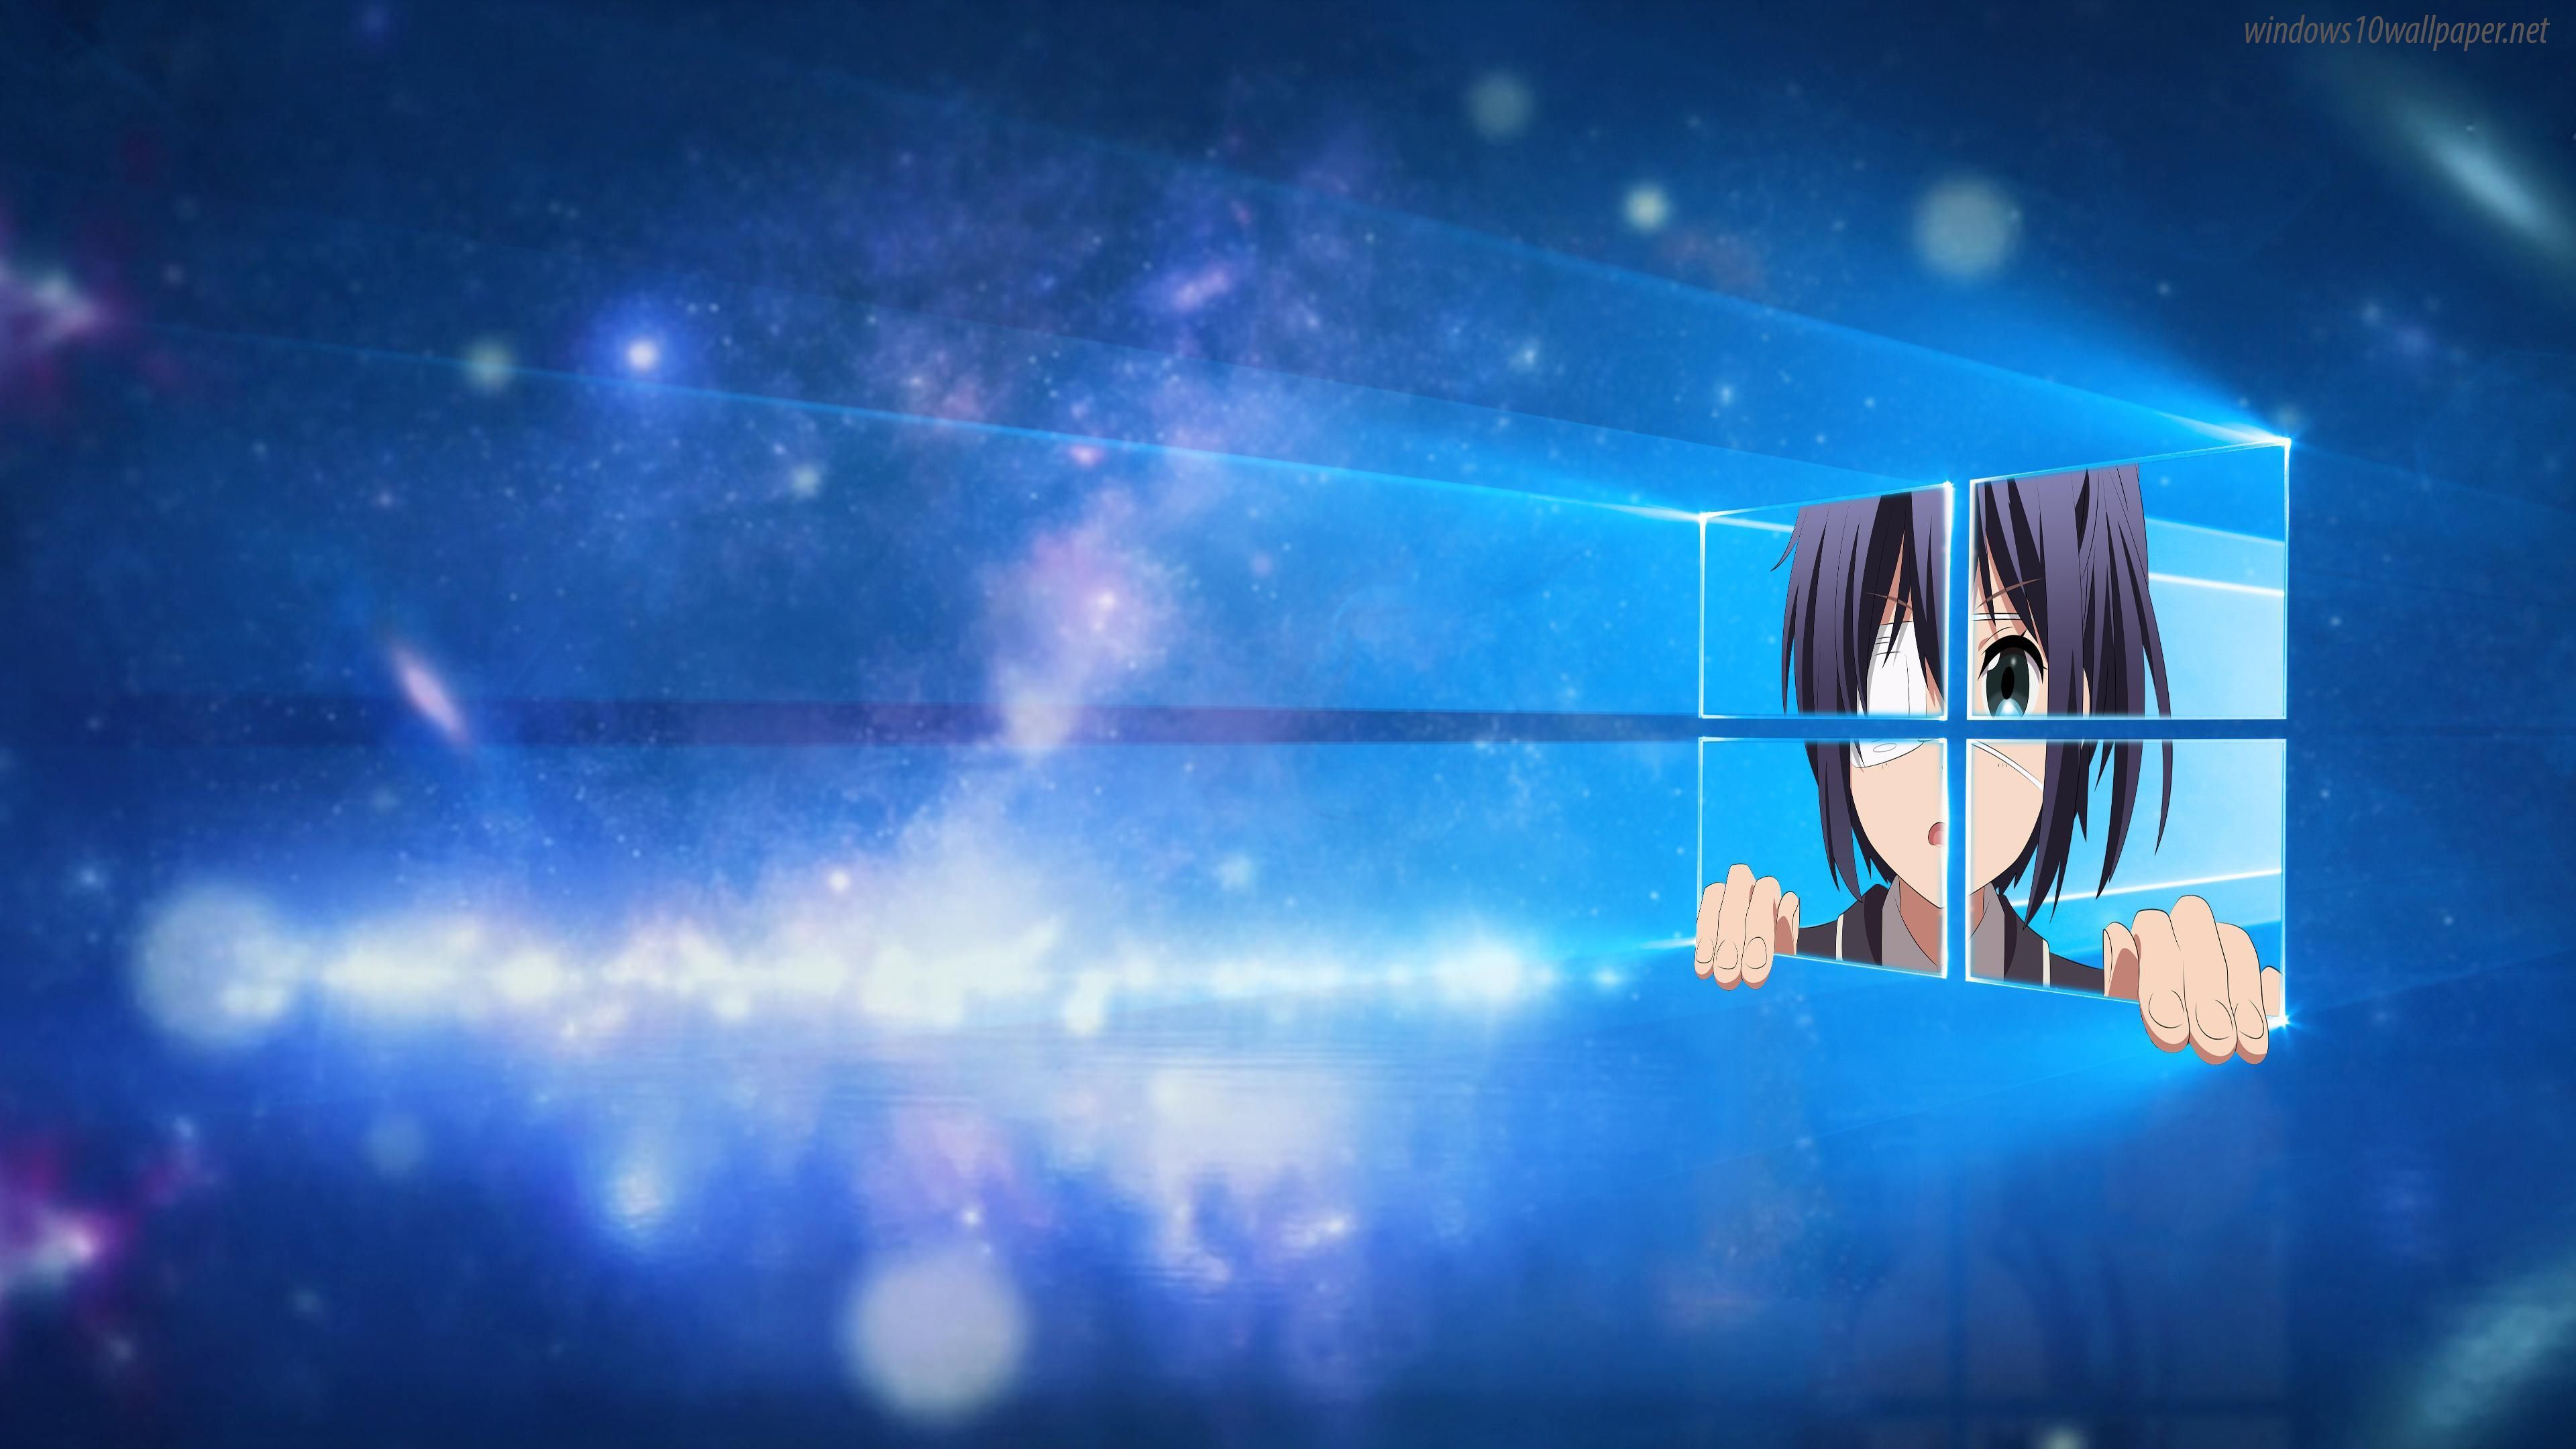 Windows 10 4k Anime Wallpaper